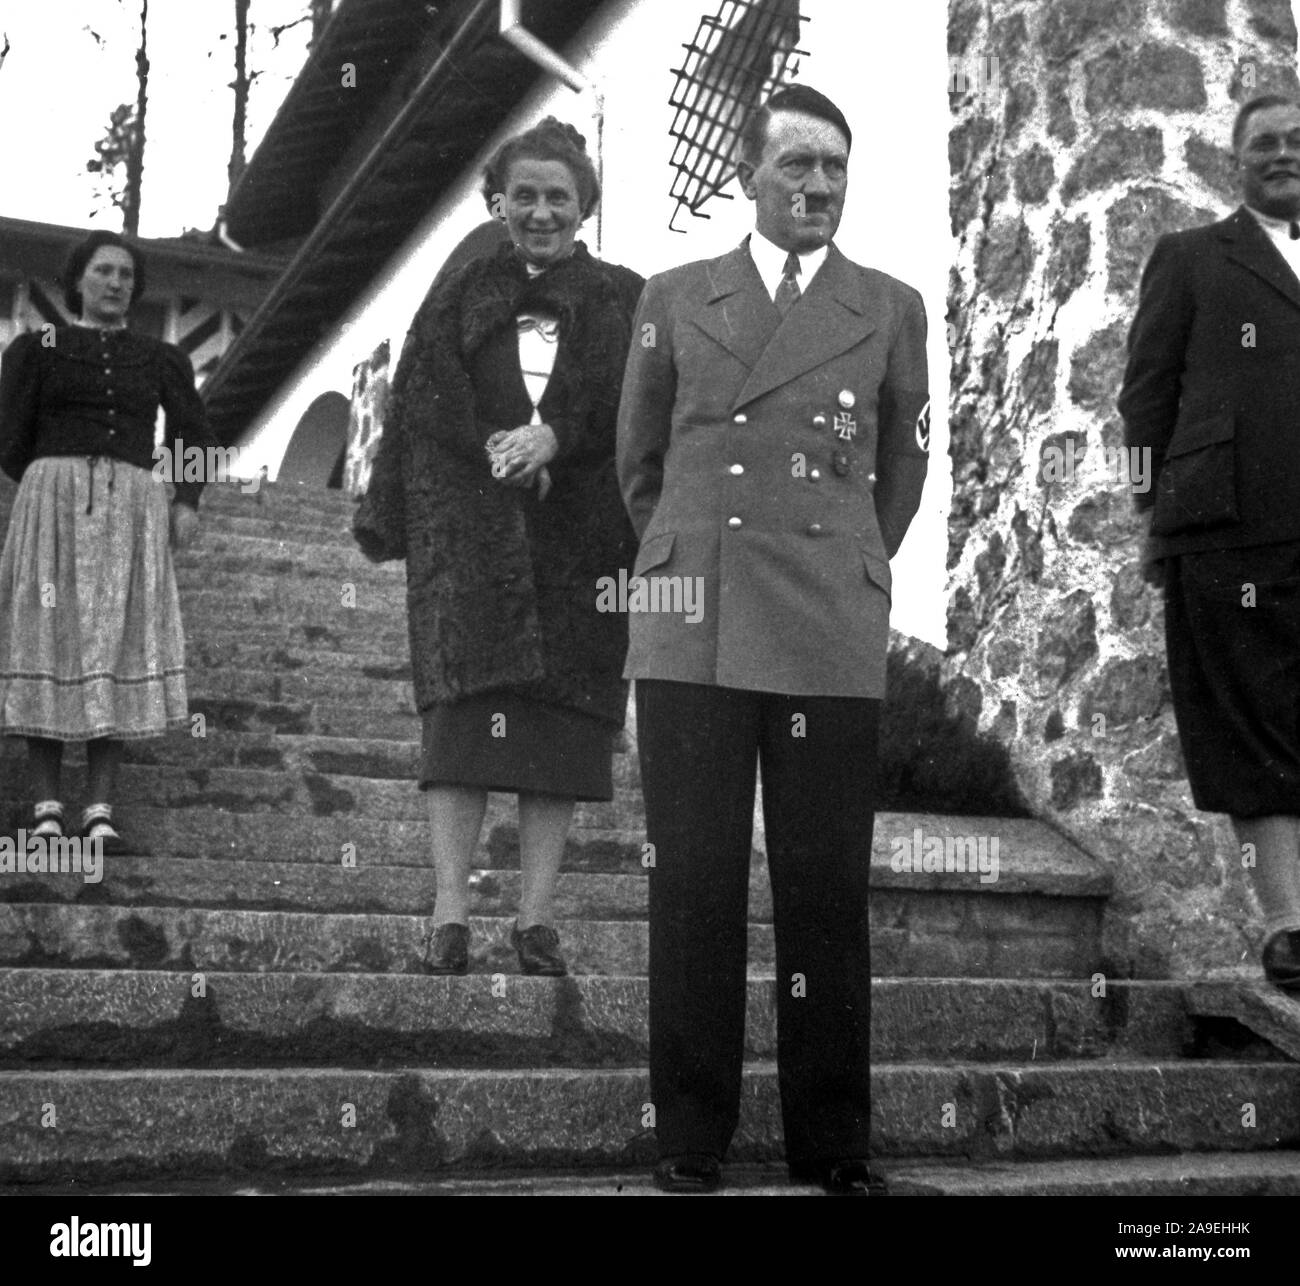 Eva Braun Sammlung (Dvadeset ossam) - Adolf Hitler stand auf der Treppe Ca. 1930s oder 1940s Stockfoto